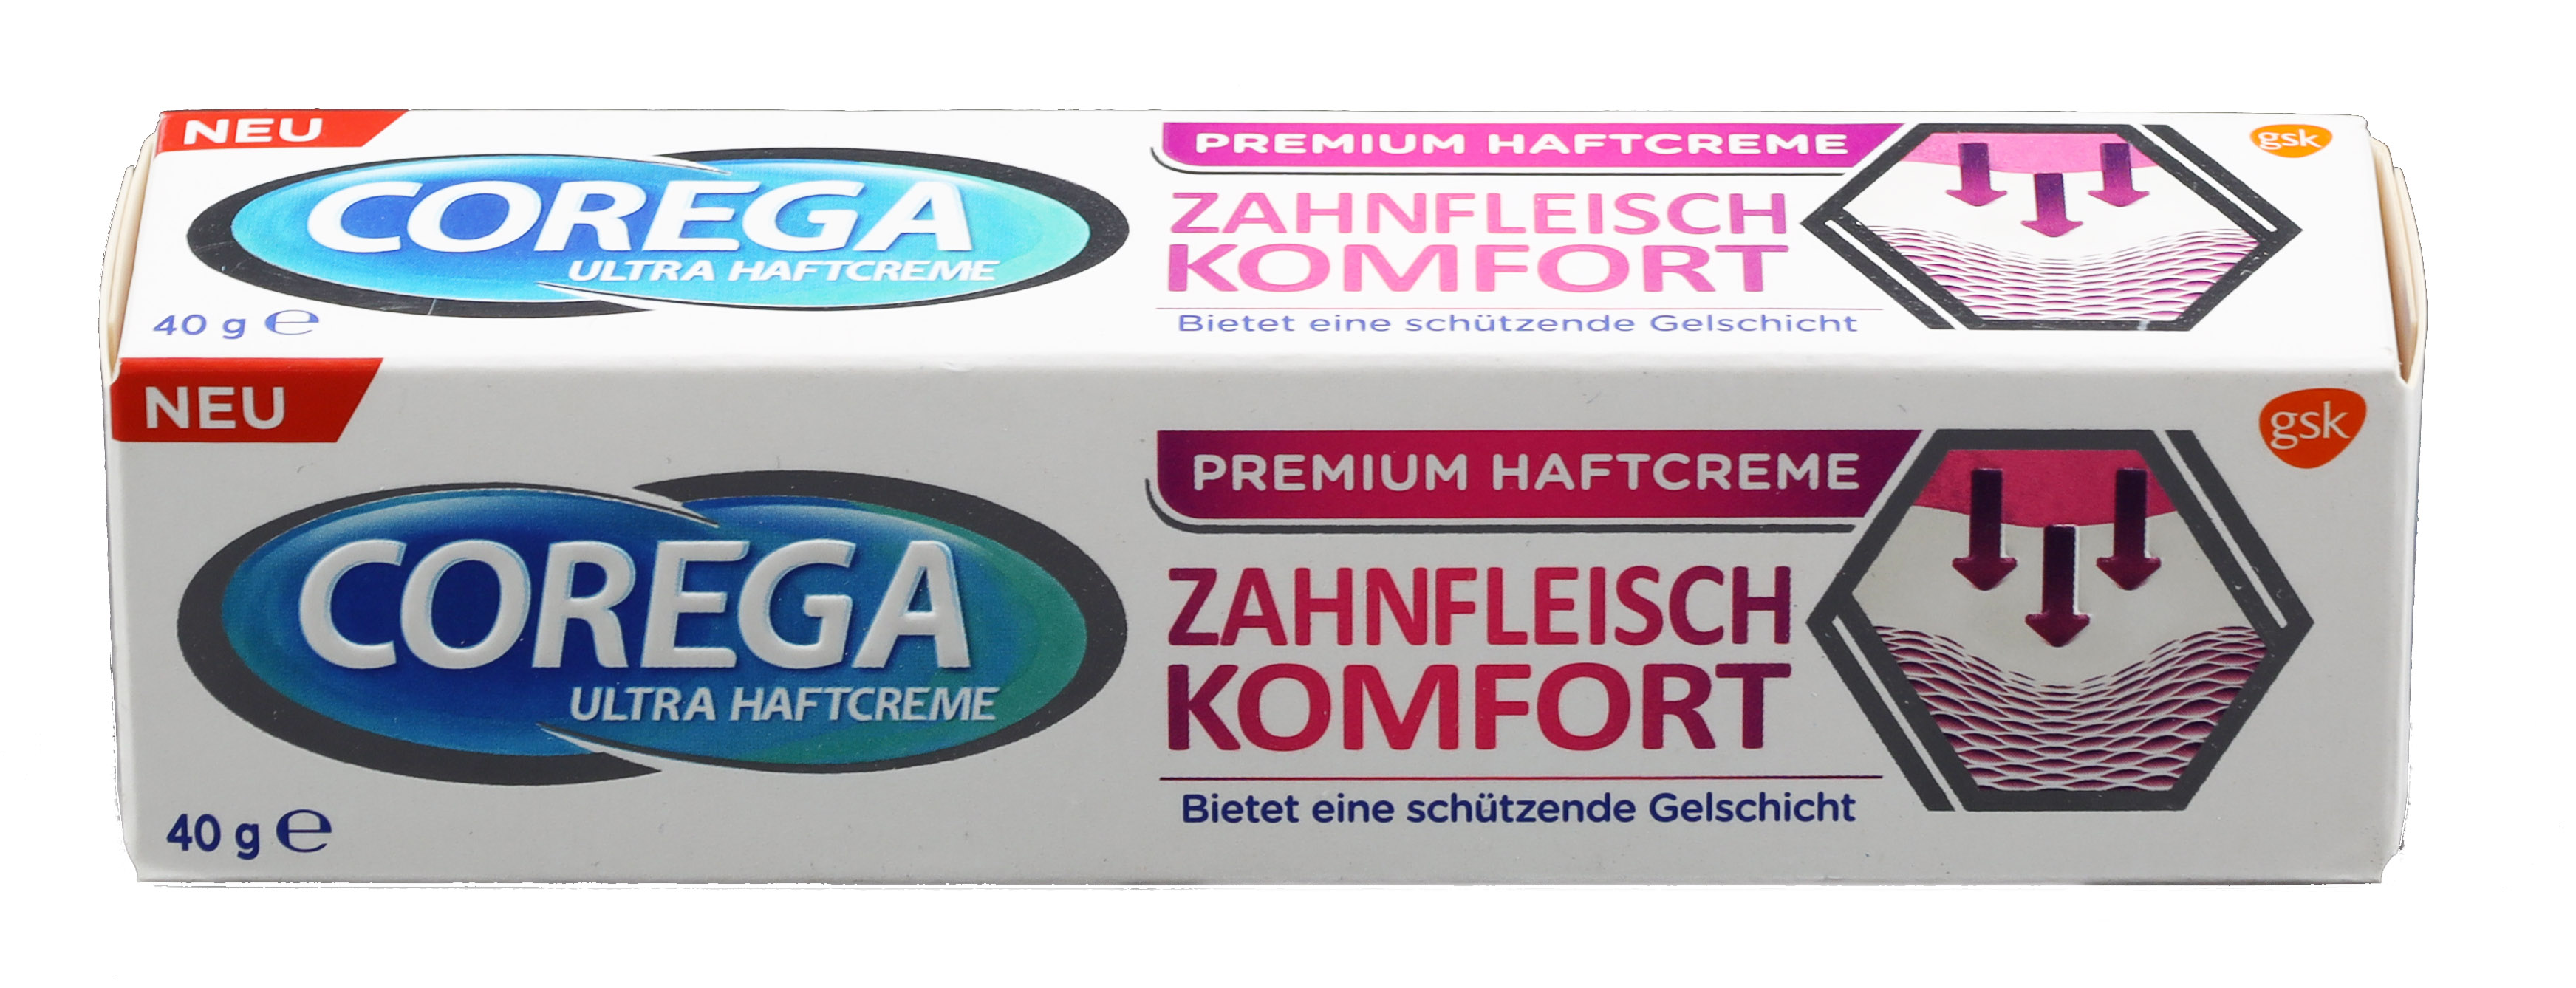 Corega Ultra Haftcreme Zahnfleischkomfort, 40 g